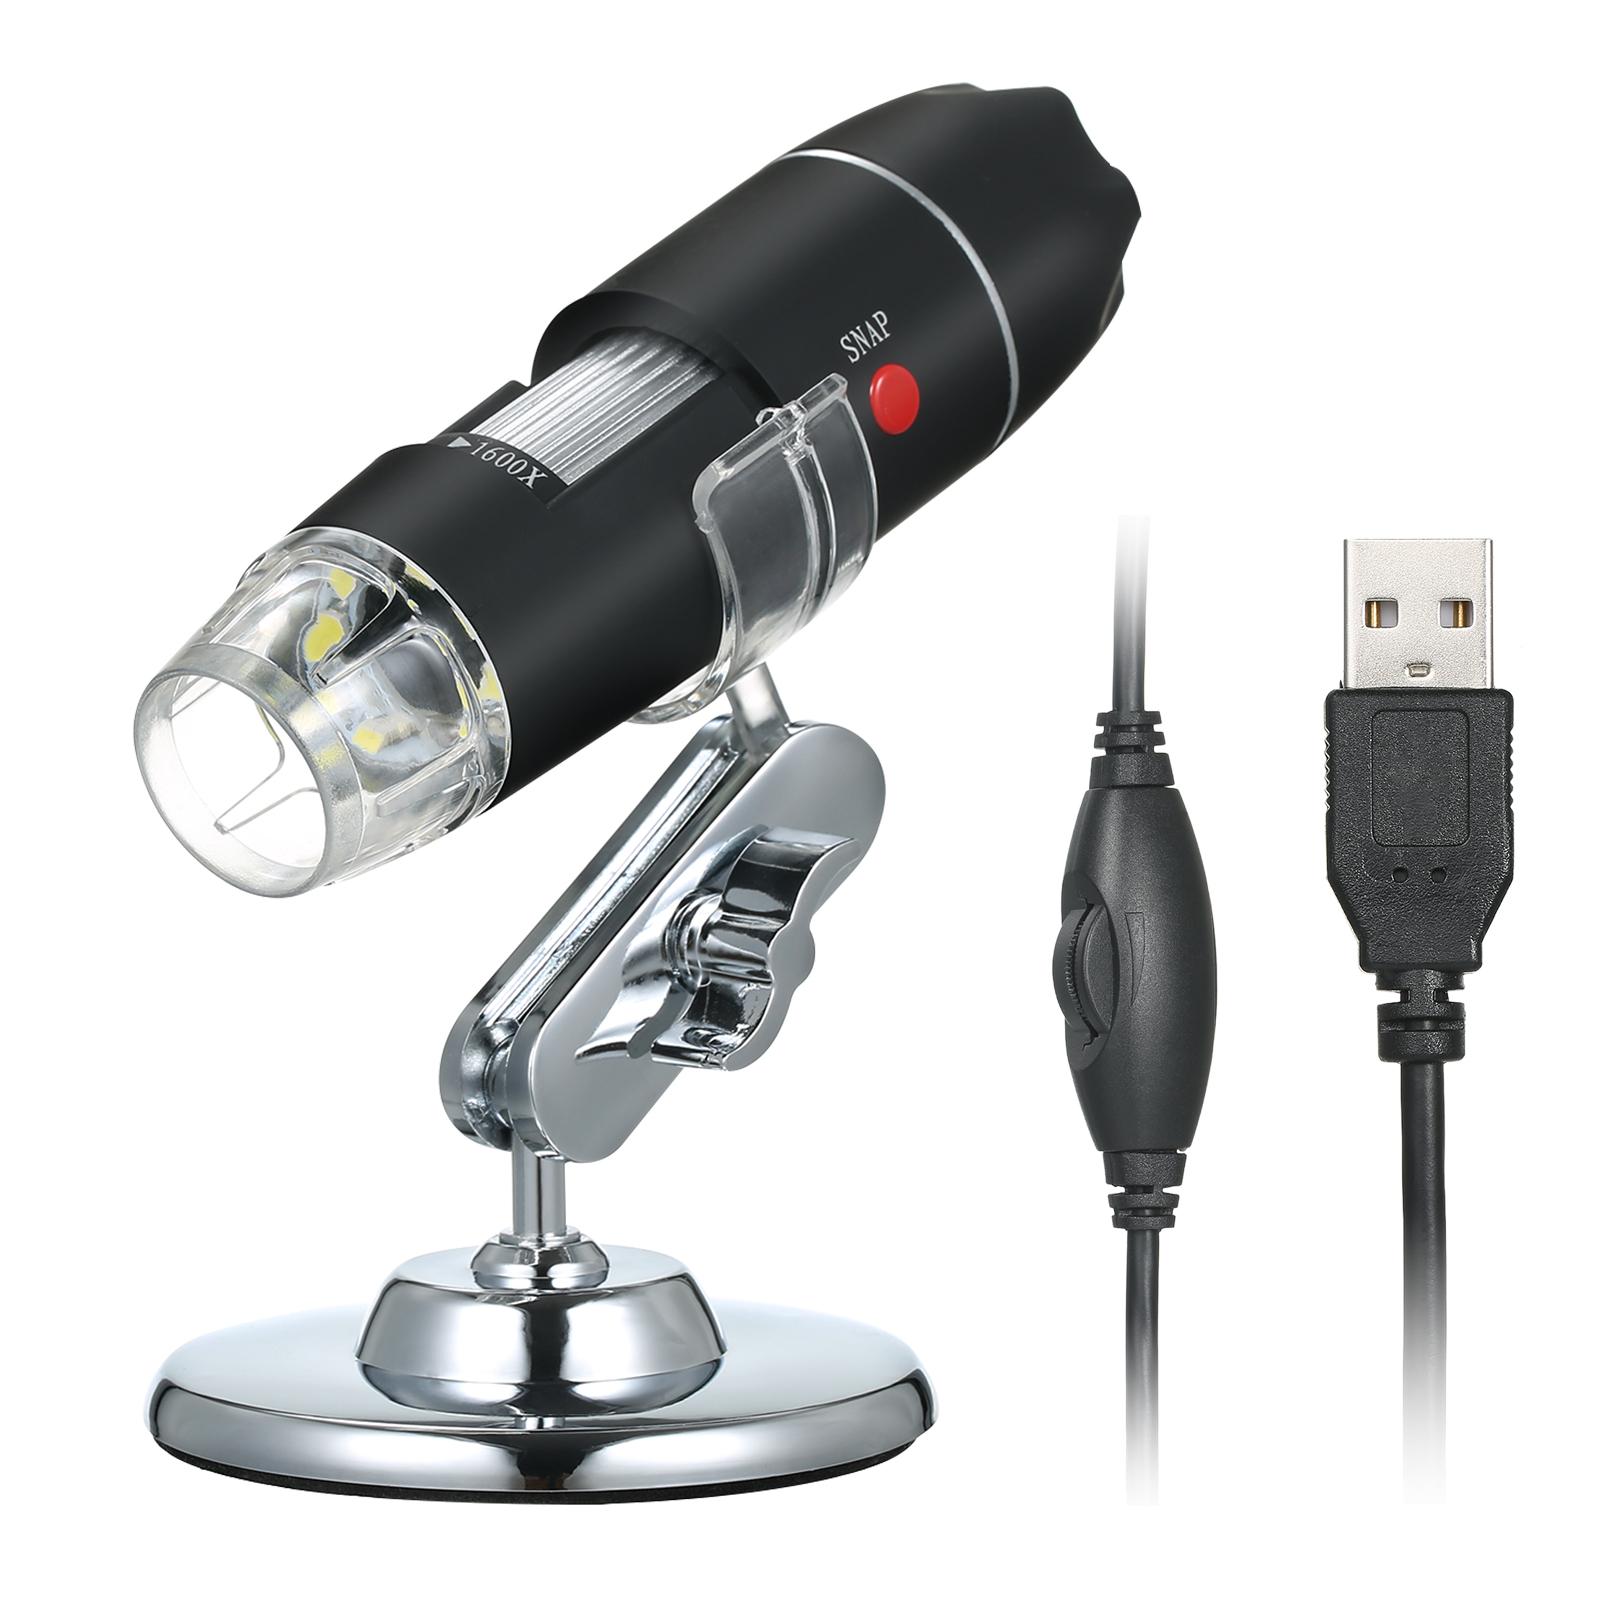 TOMTOP JMS USB digitale microscoop 1600X vergrotingscamera 8 LED's met standaard draagbare handheld inspectie